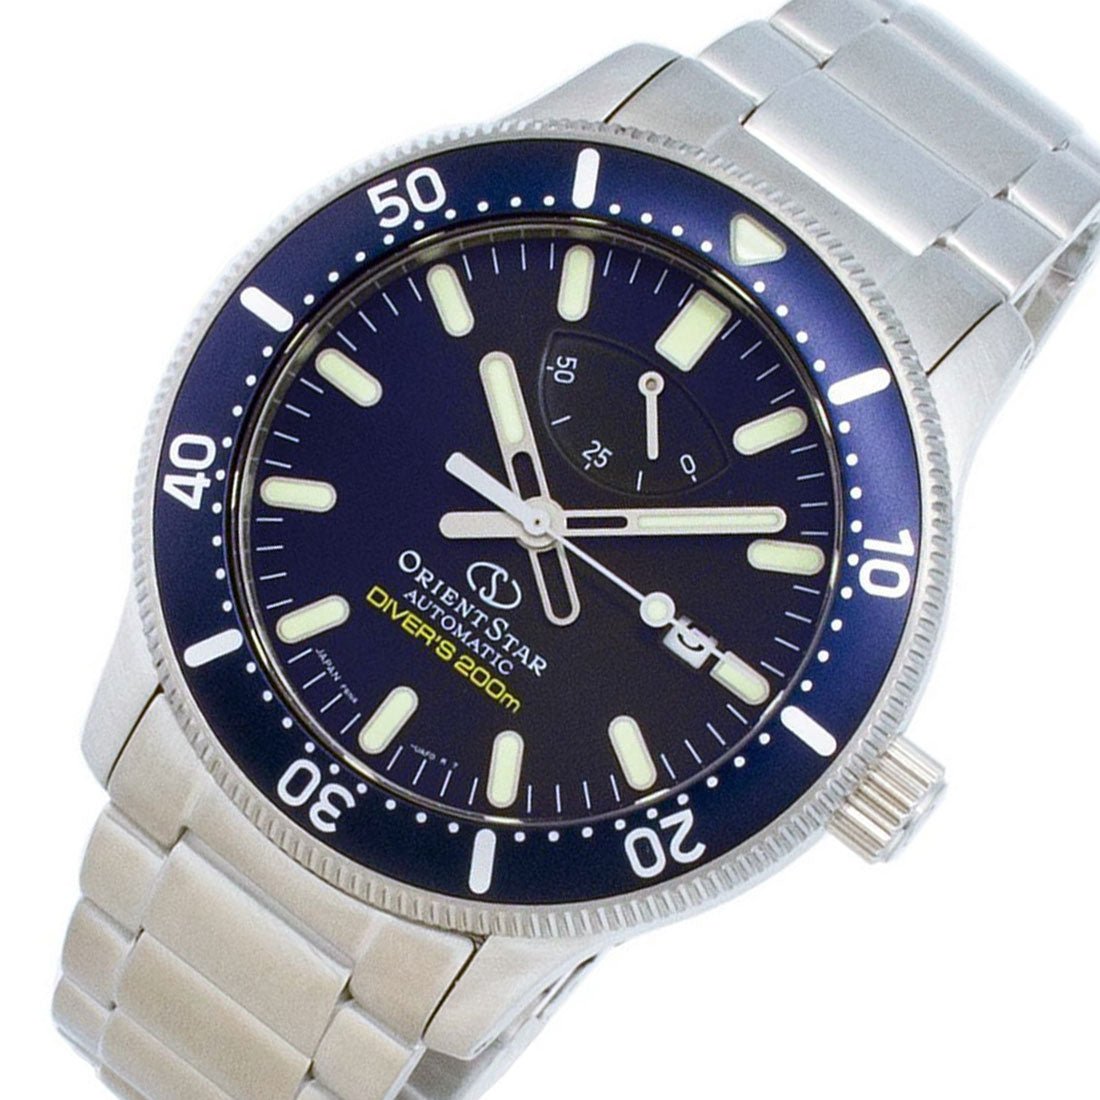 Orient Star Automatic Divers RE-AU0302L00B RE-AU0302L Blue Dial Watch -Orient